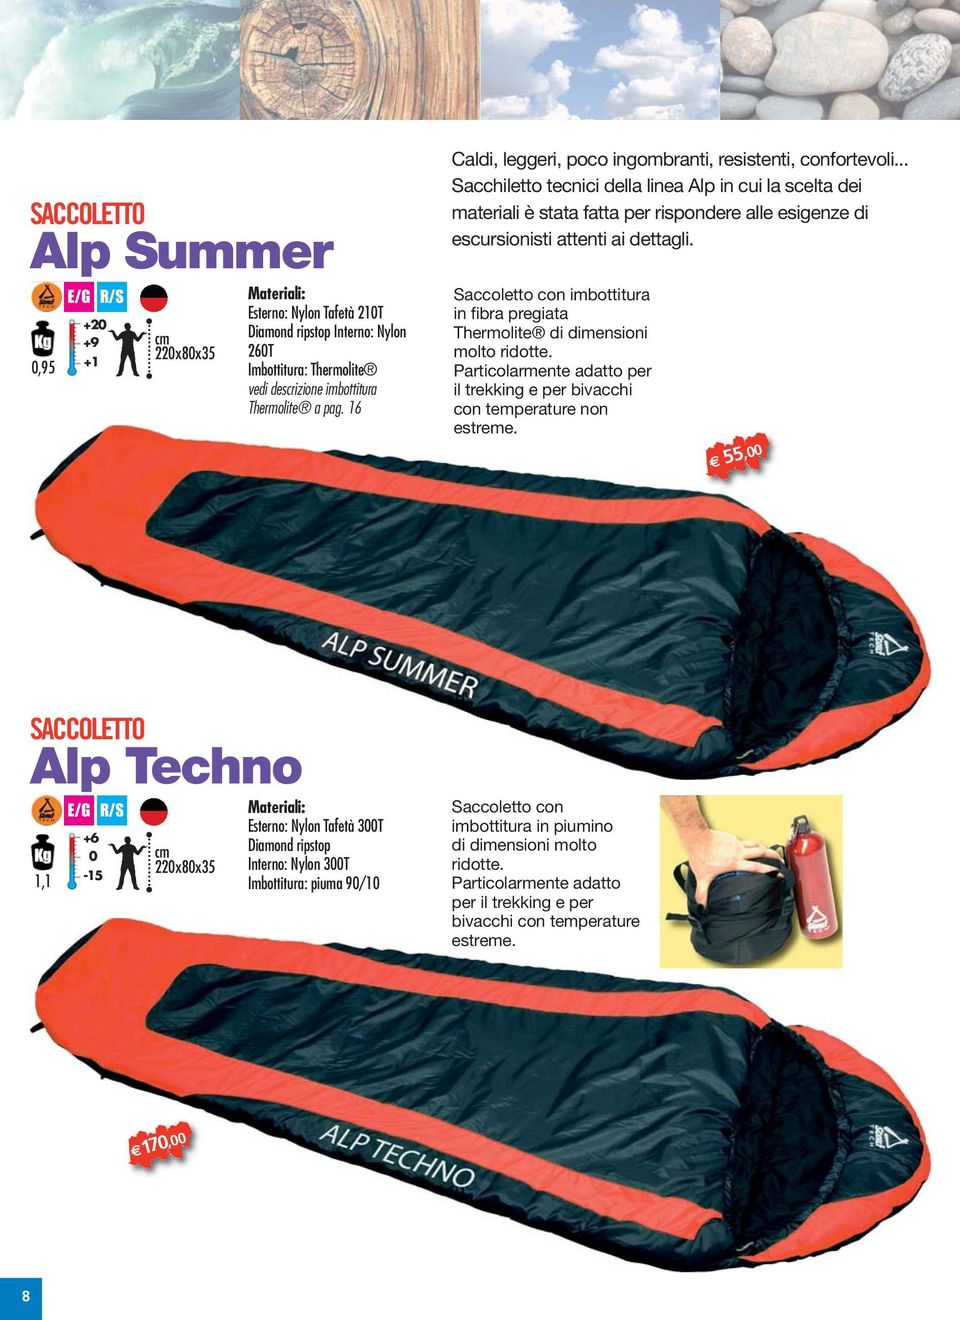 .. Sacchiletto tecnici della linea Alp in cui la scelta dei materiali è stata fatta per rispondere alle esigenze di escursionisti attenti ai dettagli.